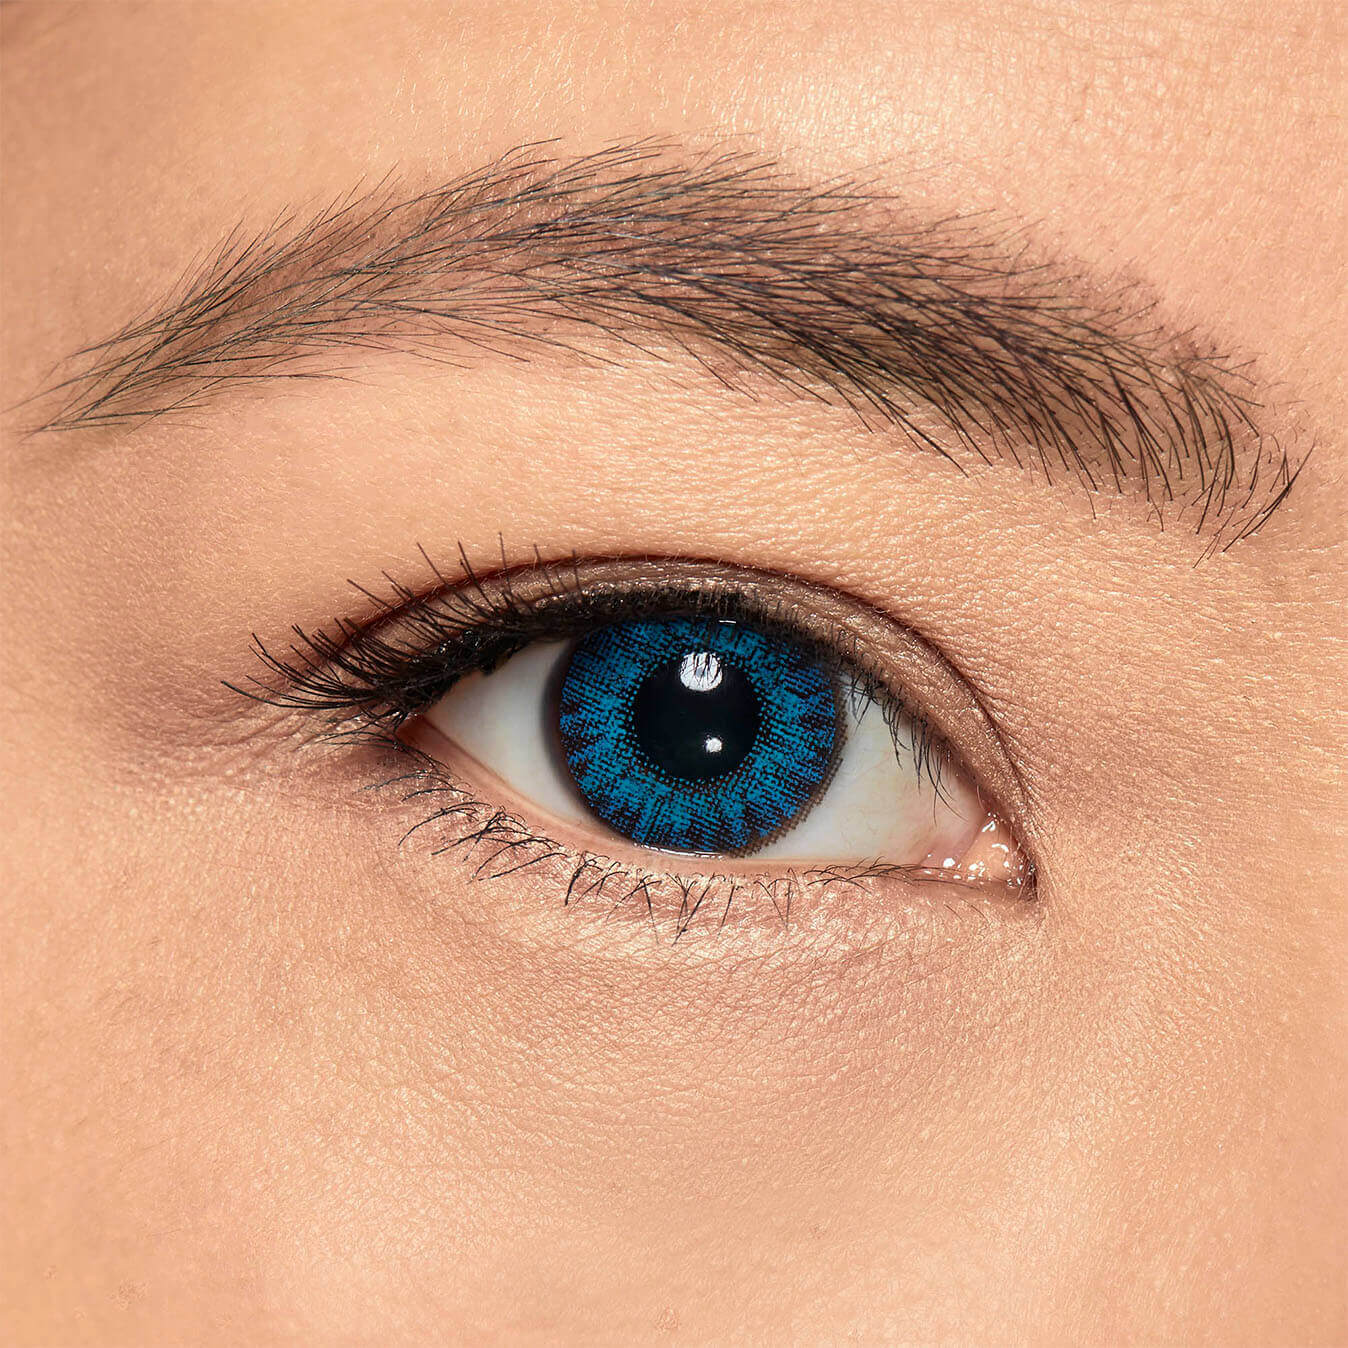 Fleksibel Sømand klamre sig FreshLook Colorblends contact lenses on real eyes | Vision Direct UK